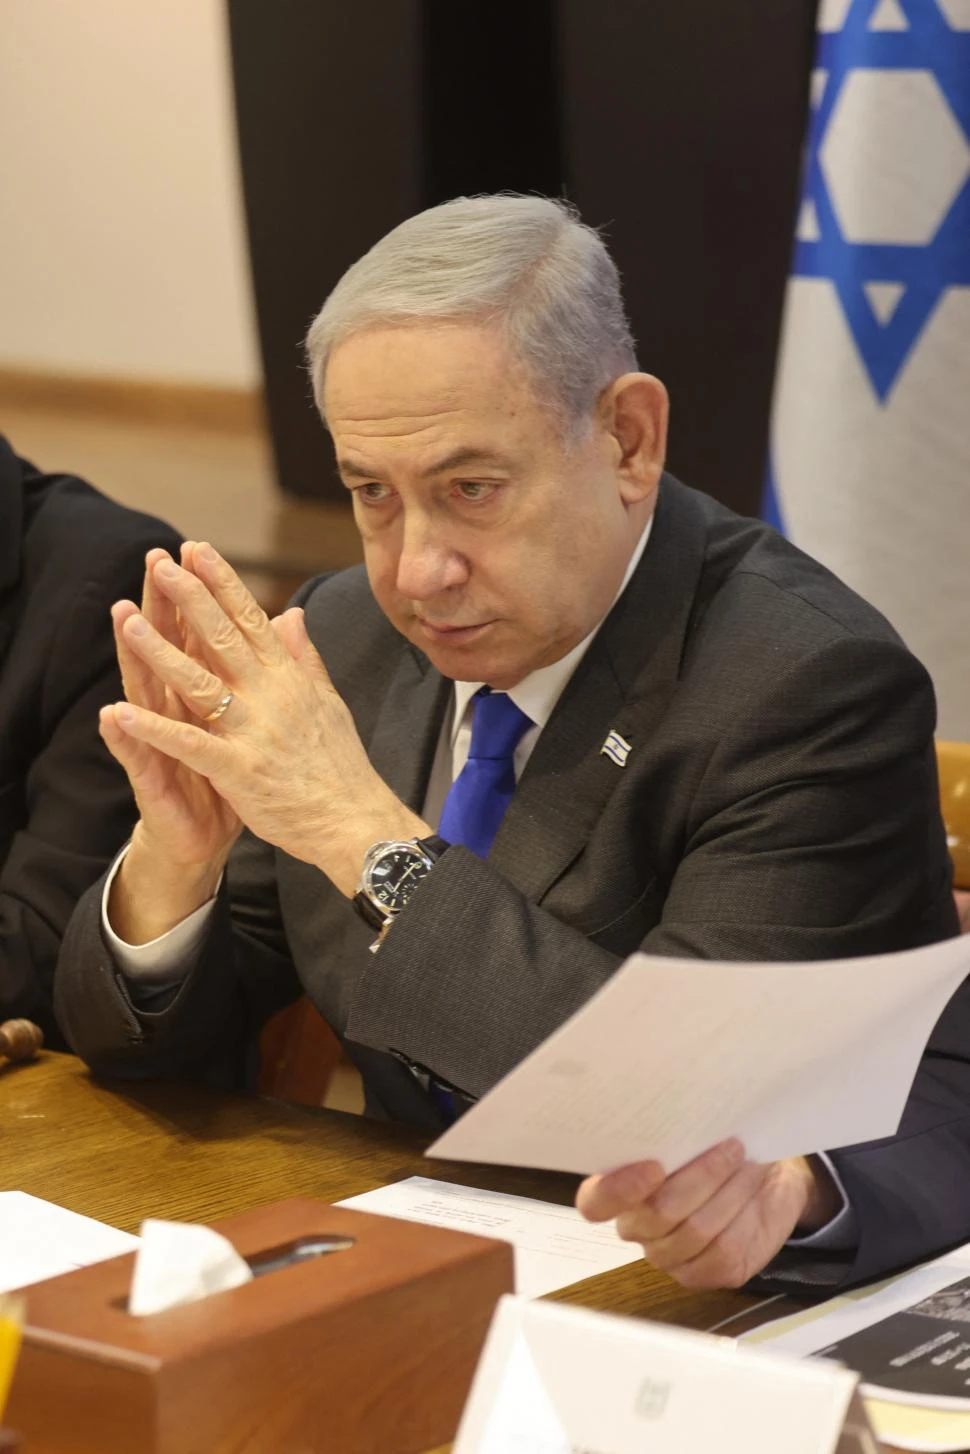 Netanyahu: “No aceptaremos un acuerdo a cualquier precio”